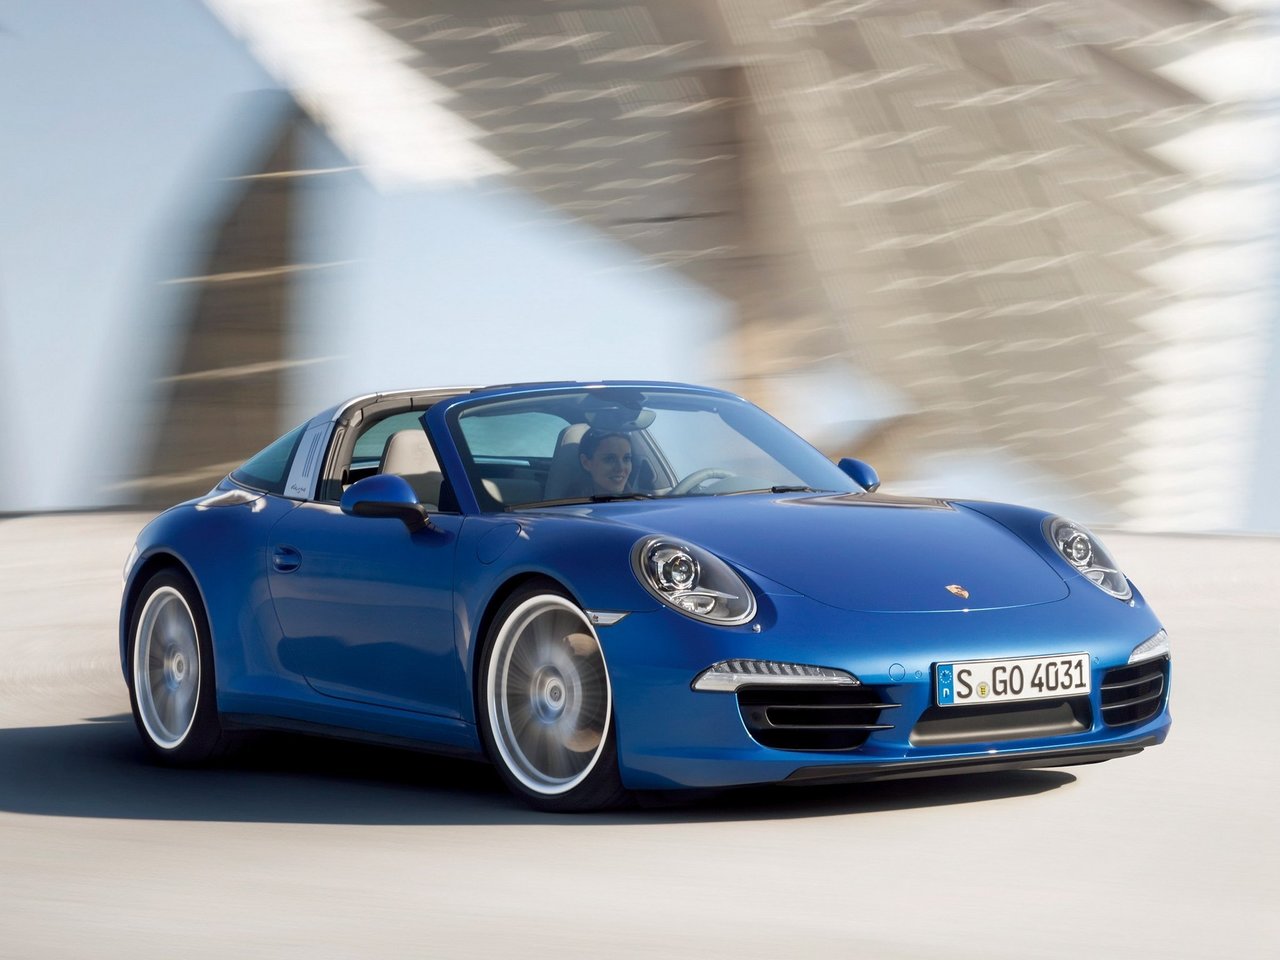 Расход газа четырёх комплектаций тарга Targa Porsche 911. Разница стоимости заправки газом и бензином. Автономный пробег до и после установки ГБО.